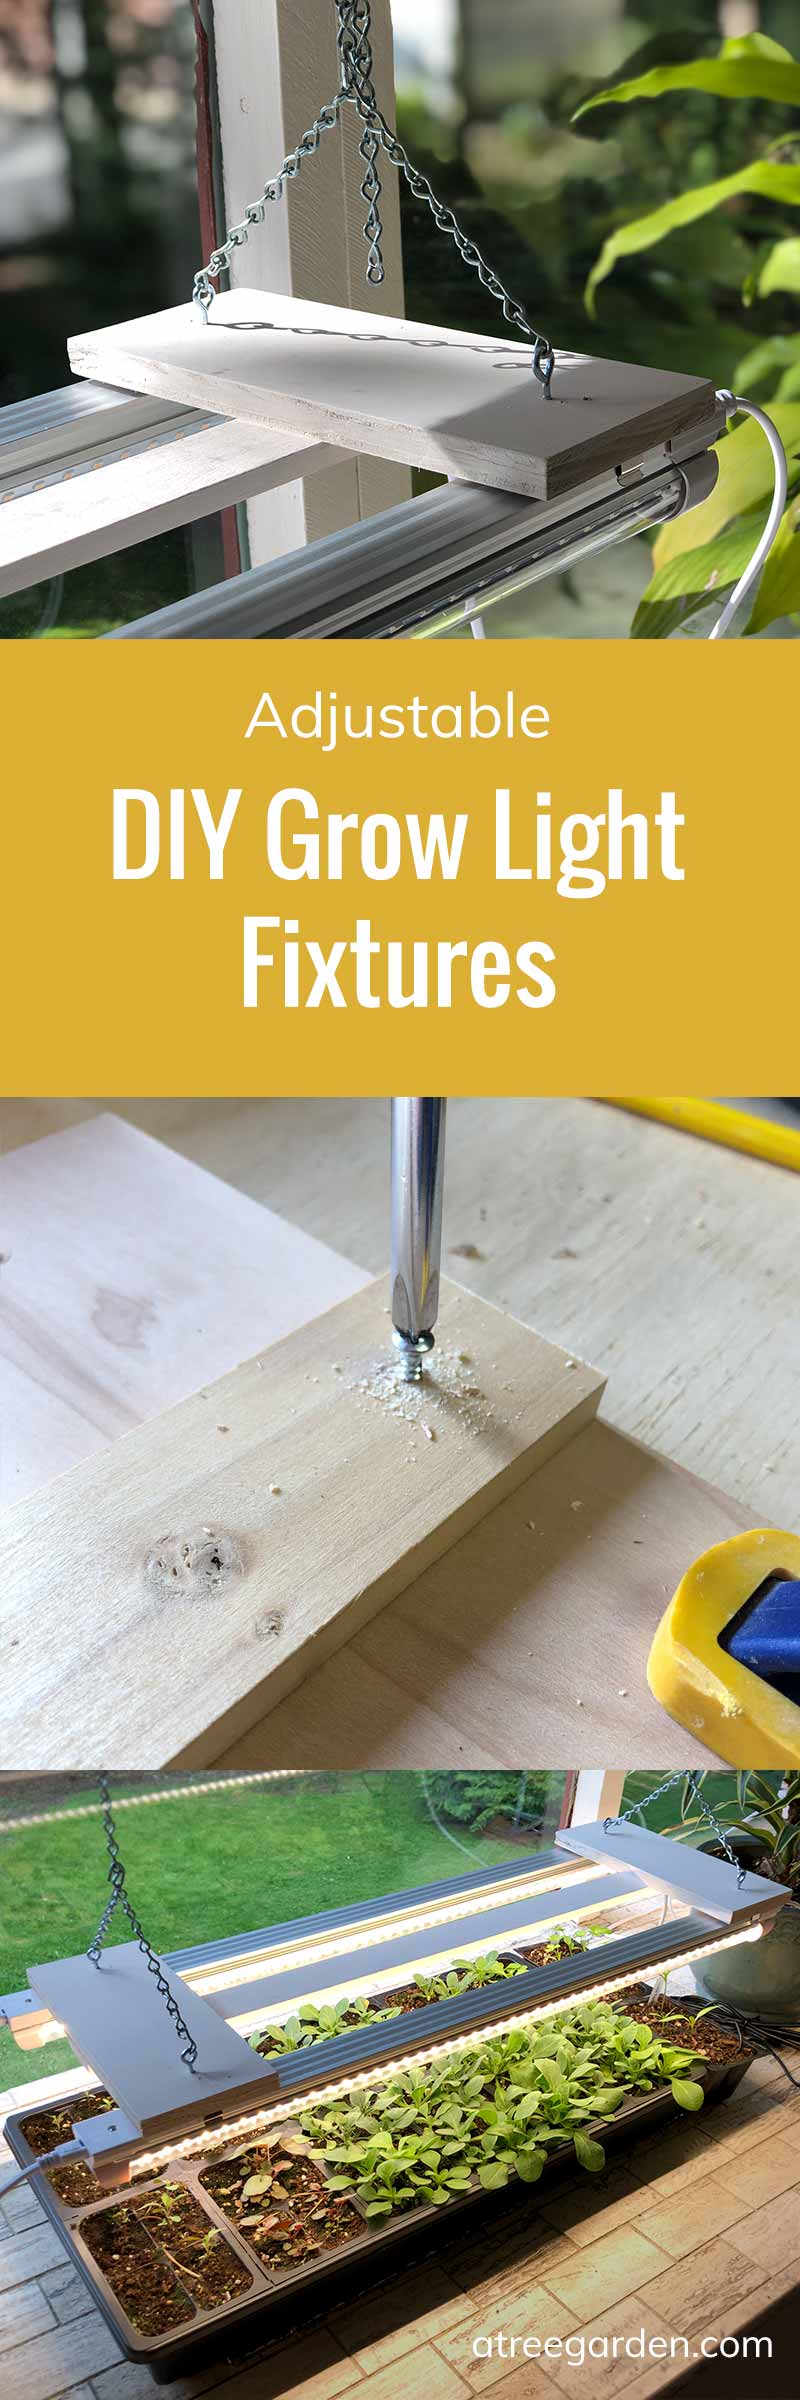 Adjustable Grow Light Fixtures